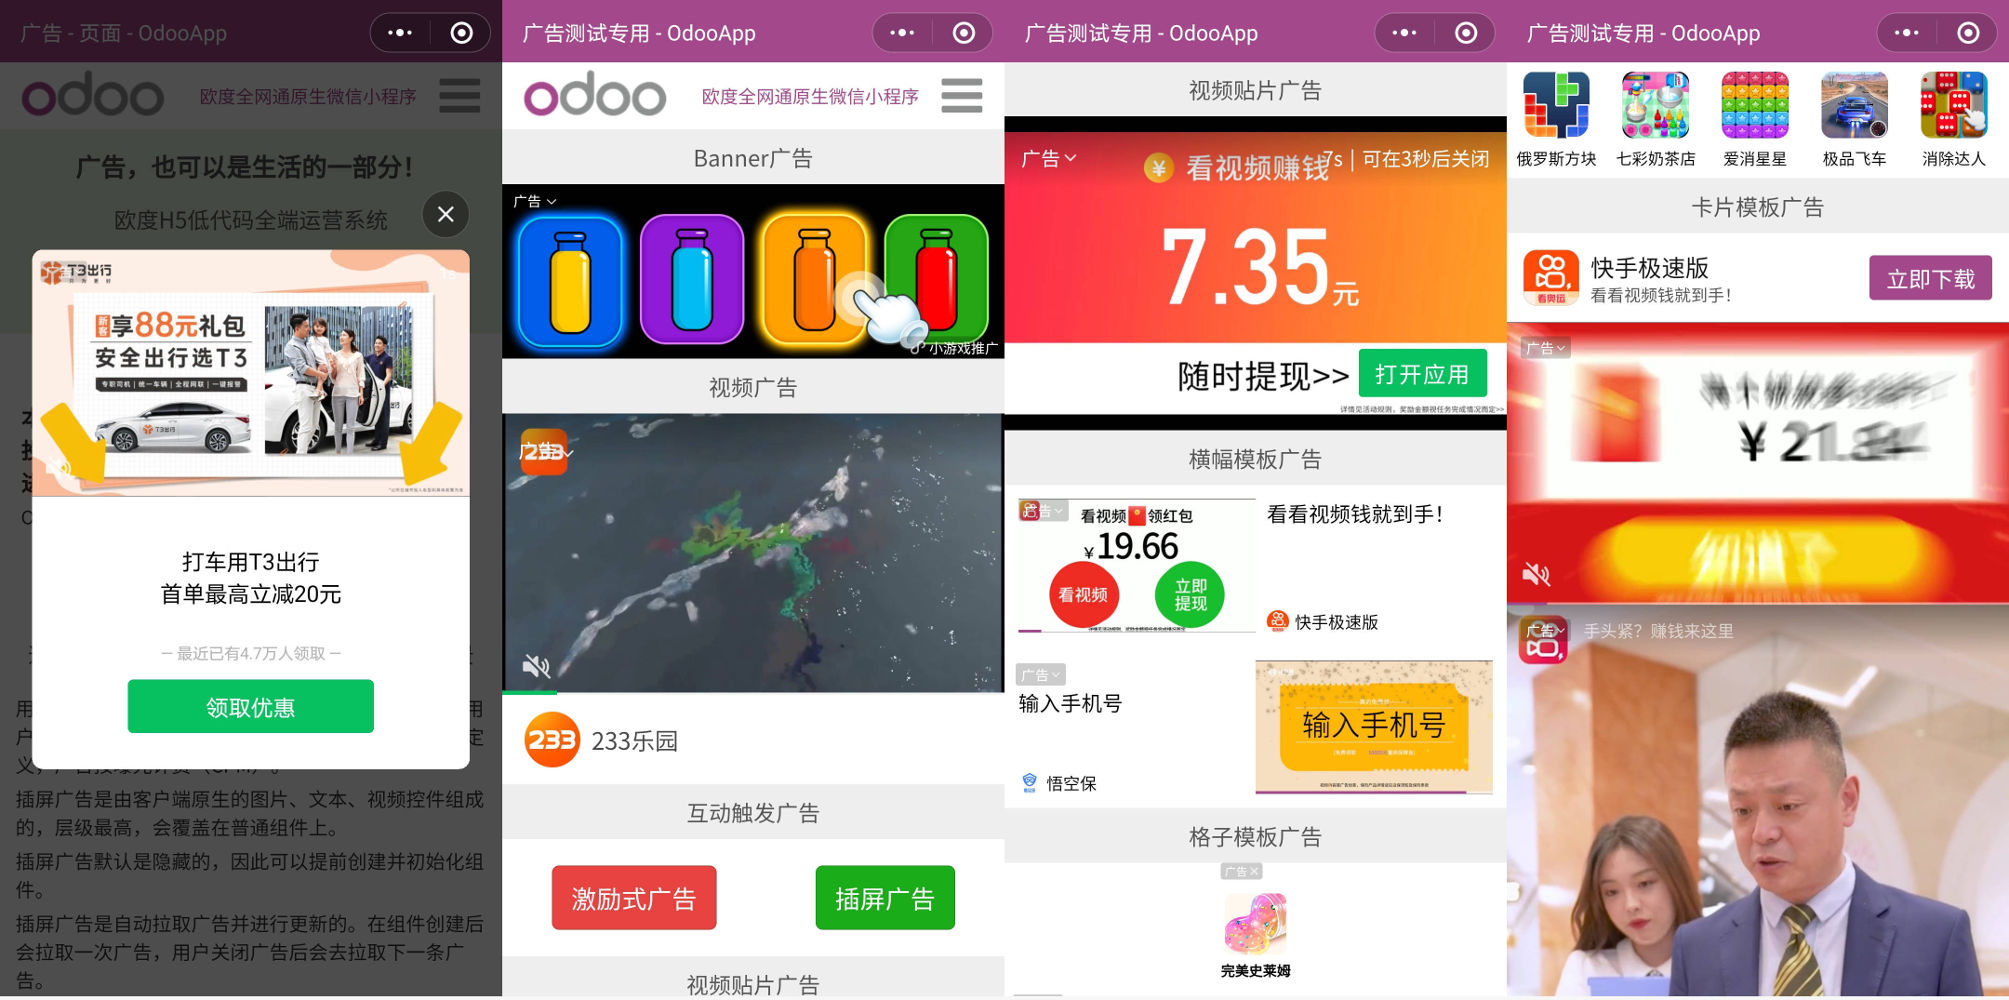 ODOO流量主低代码广告运营